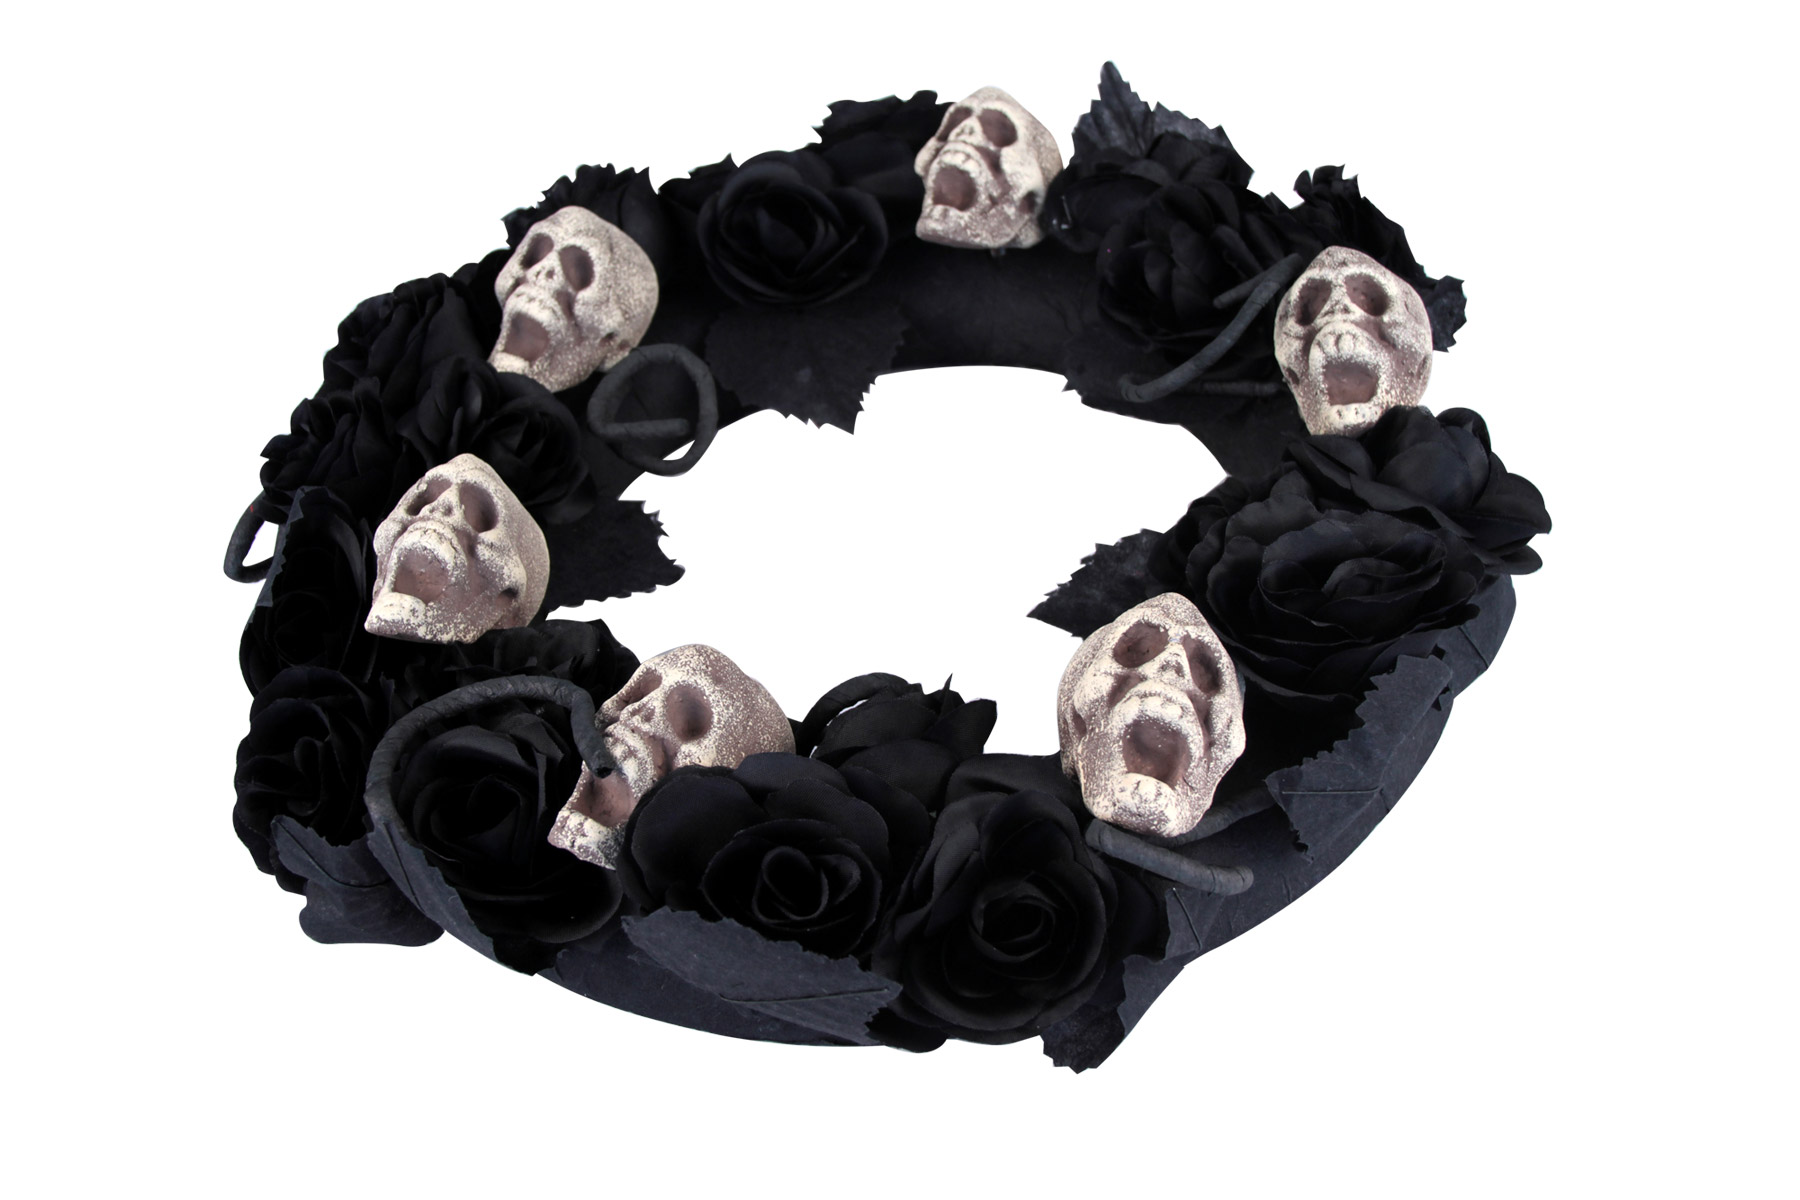 Trauerkranz mit Totenschädeln Halloween-Deko schwarz-beige 38cm